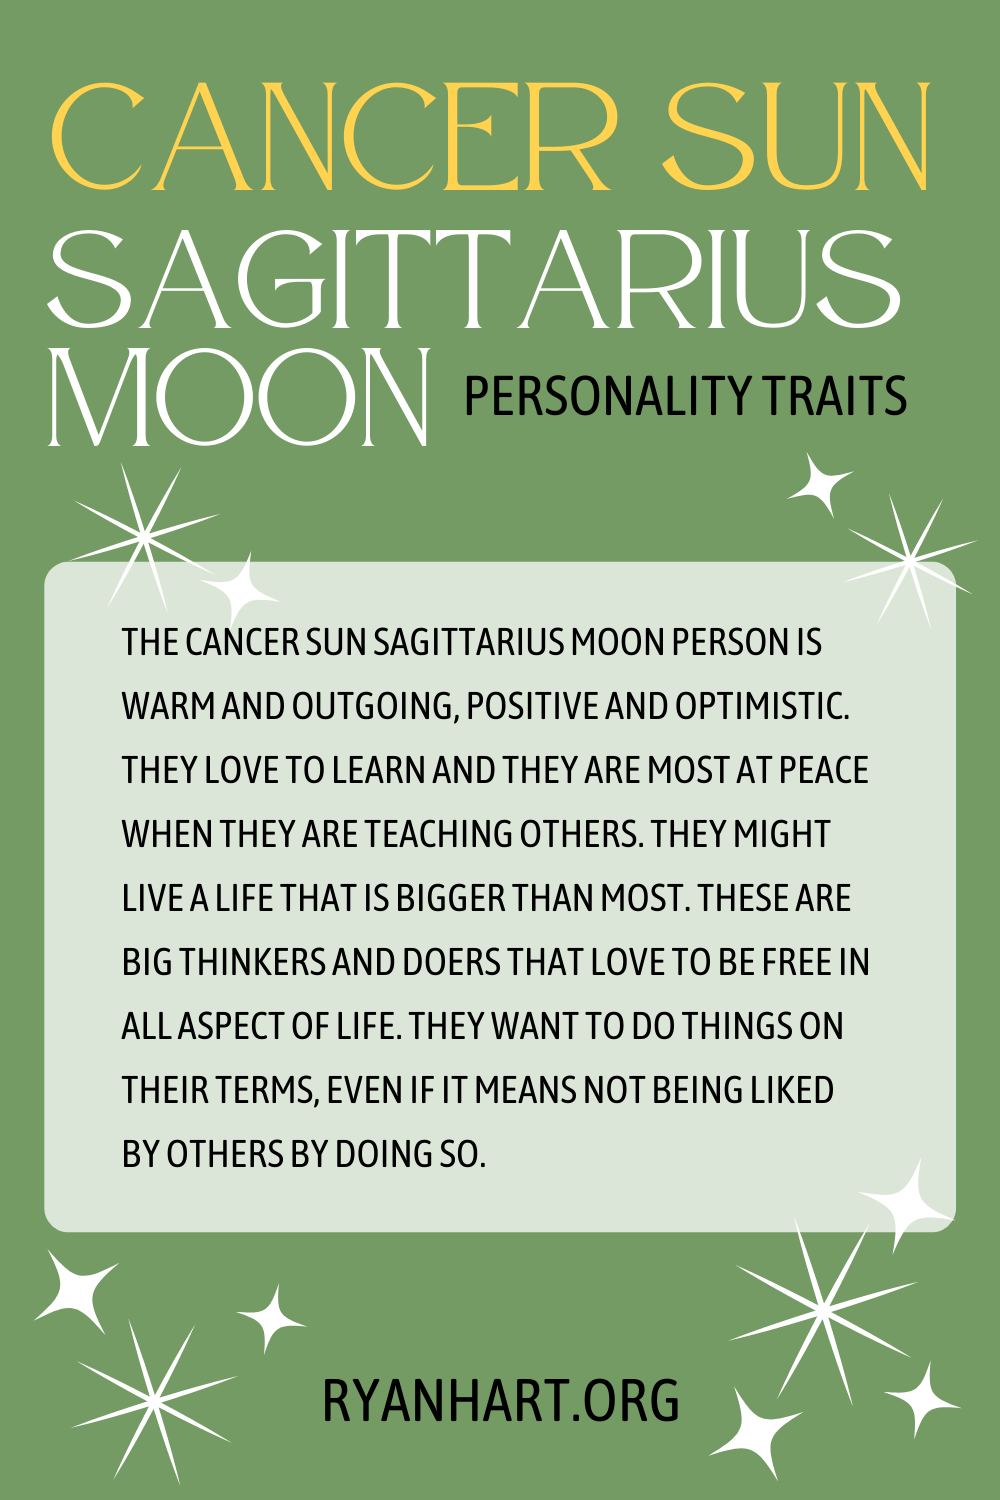  ڪينسر سج Sagittarius چنڊ شخصيت جا خاصيتون